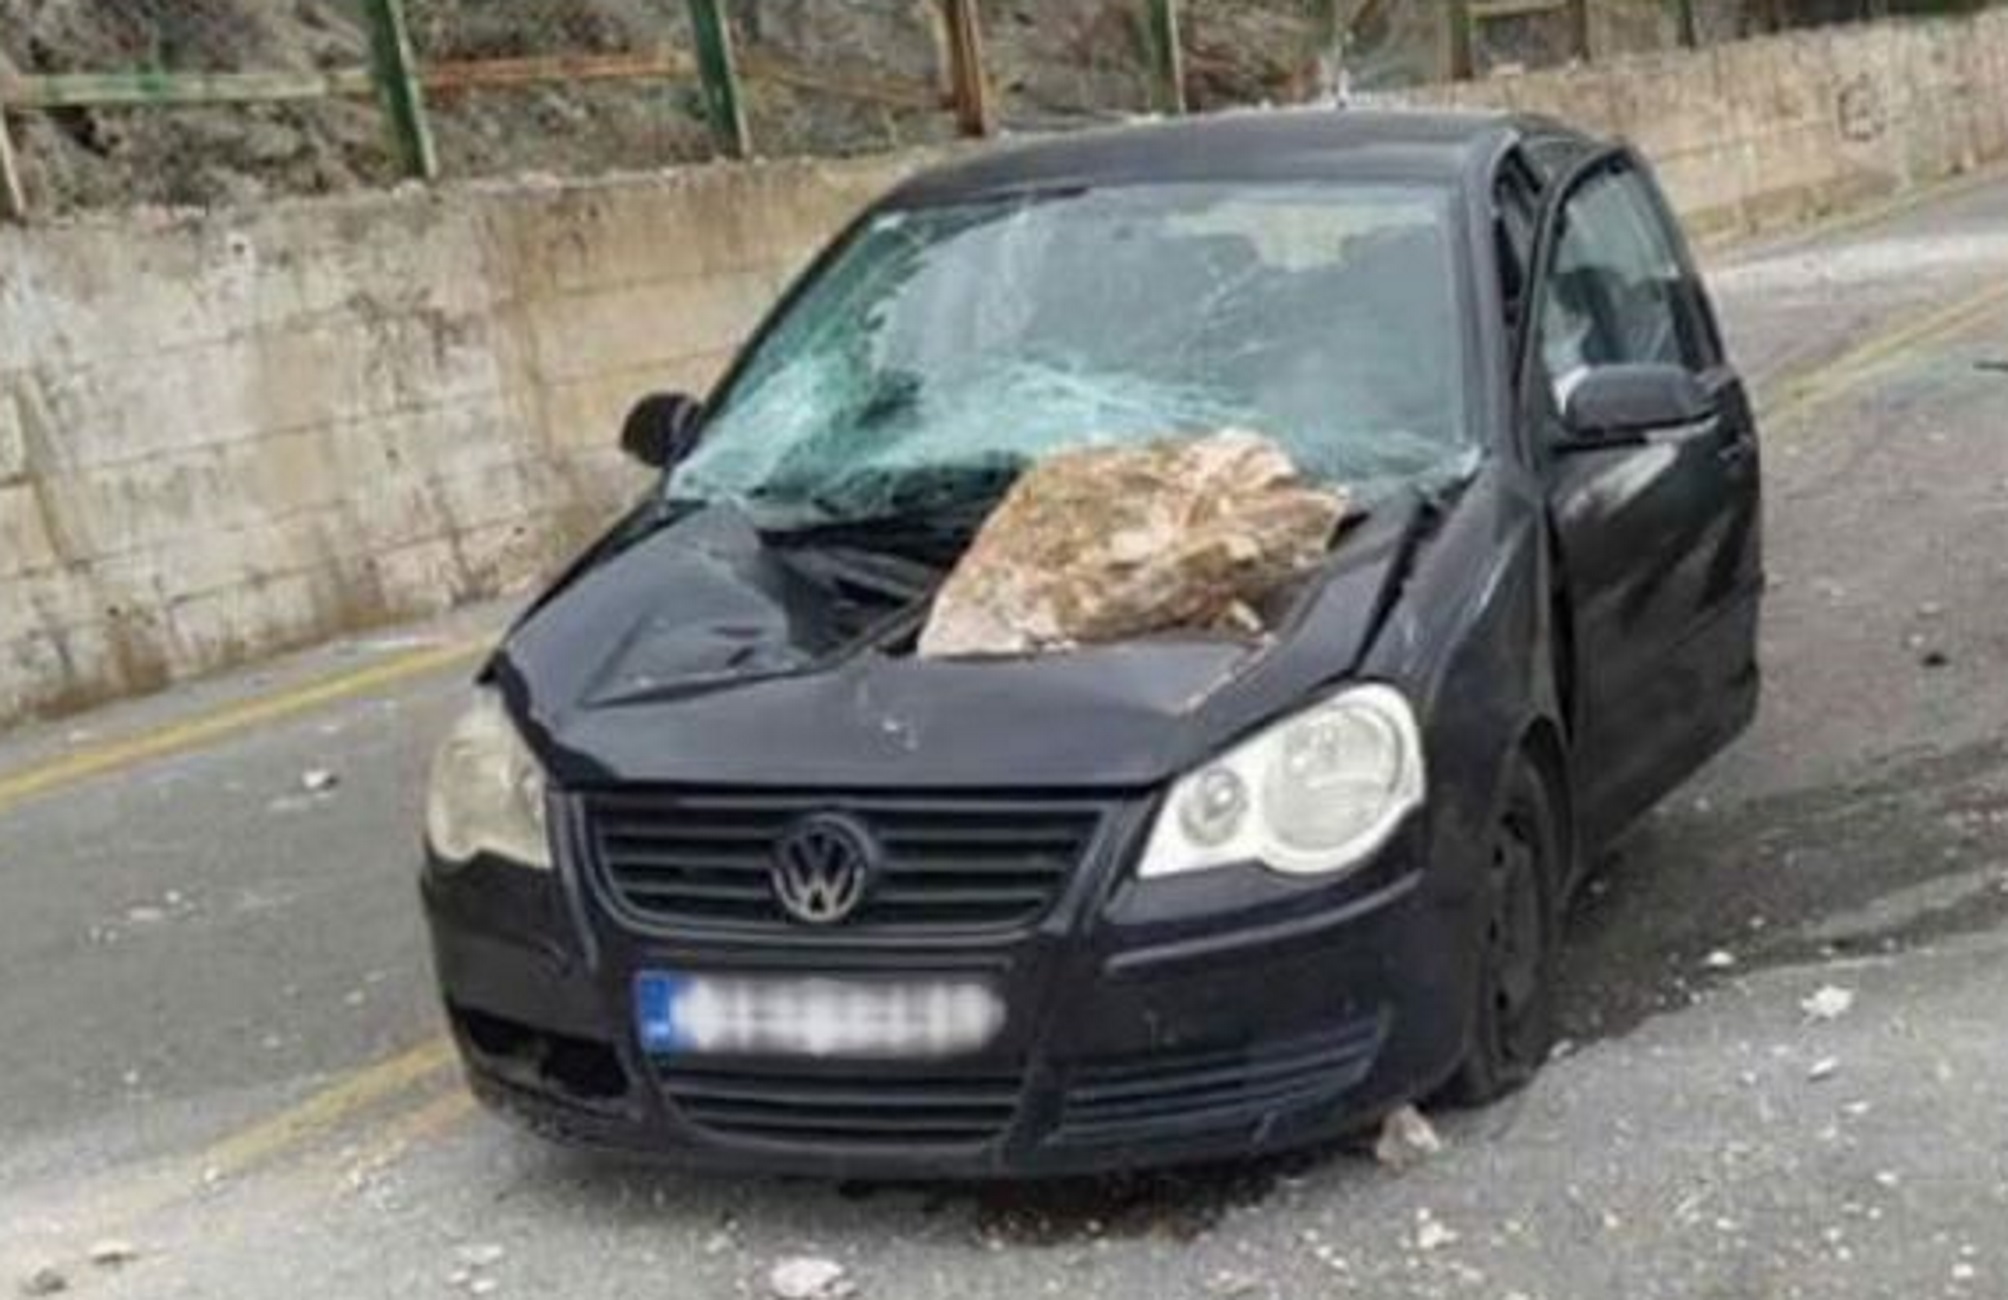 Αράχωβα: Ουρανοκατέβατος βράχος διέλυσε αυτοκίνητο – Σοκ για δύο ζευγάρια που πήγαιναν εκδρομή